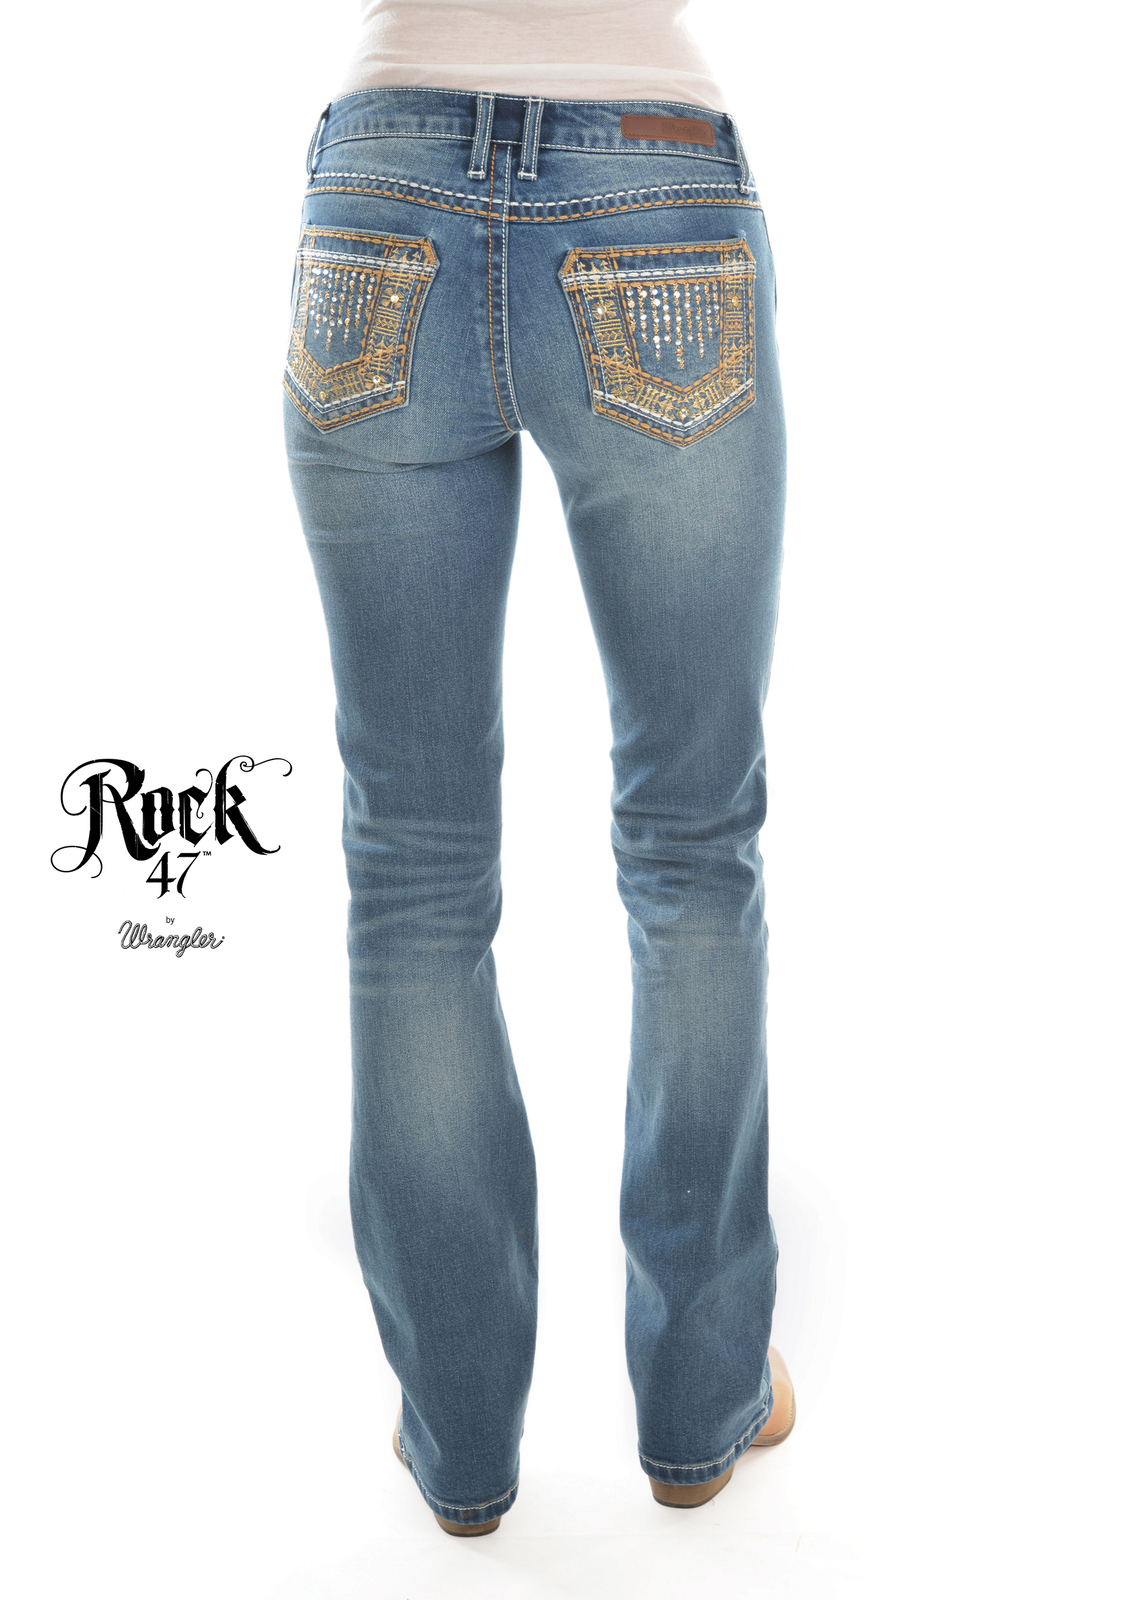 Womens Rock 47 Jeans, True Blue,Wrangler | eBay